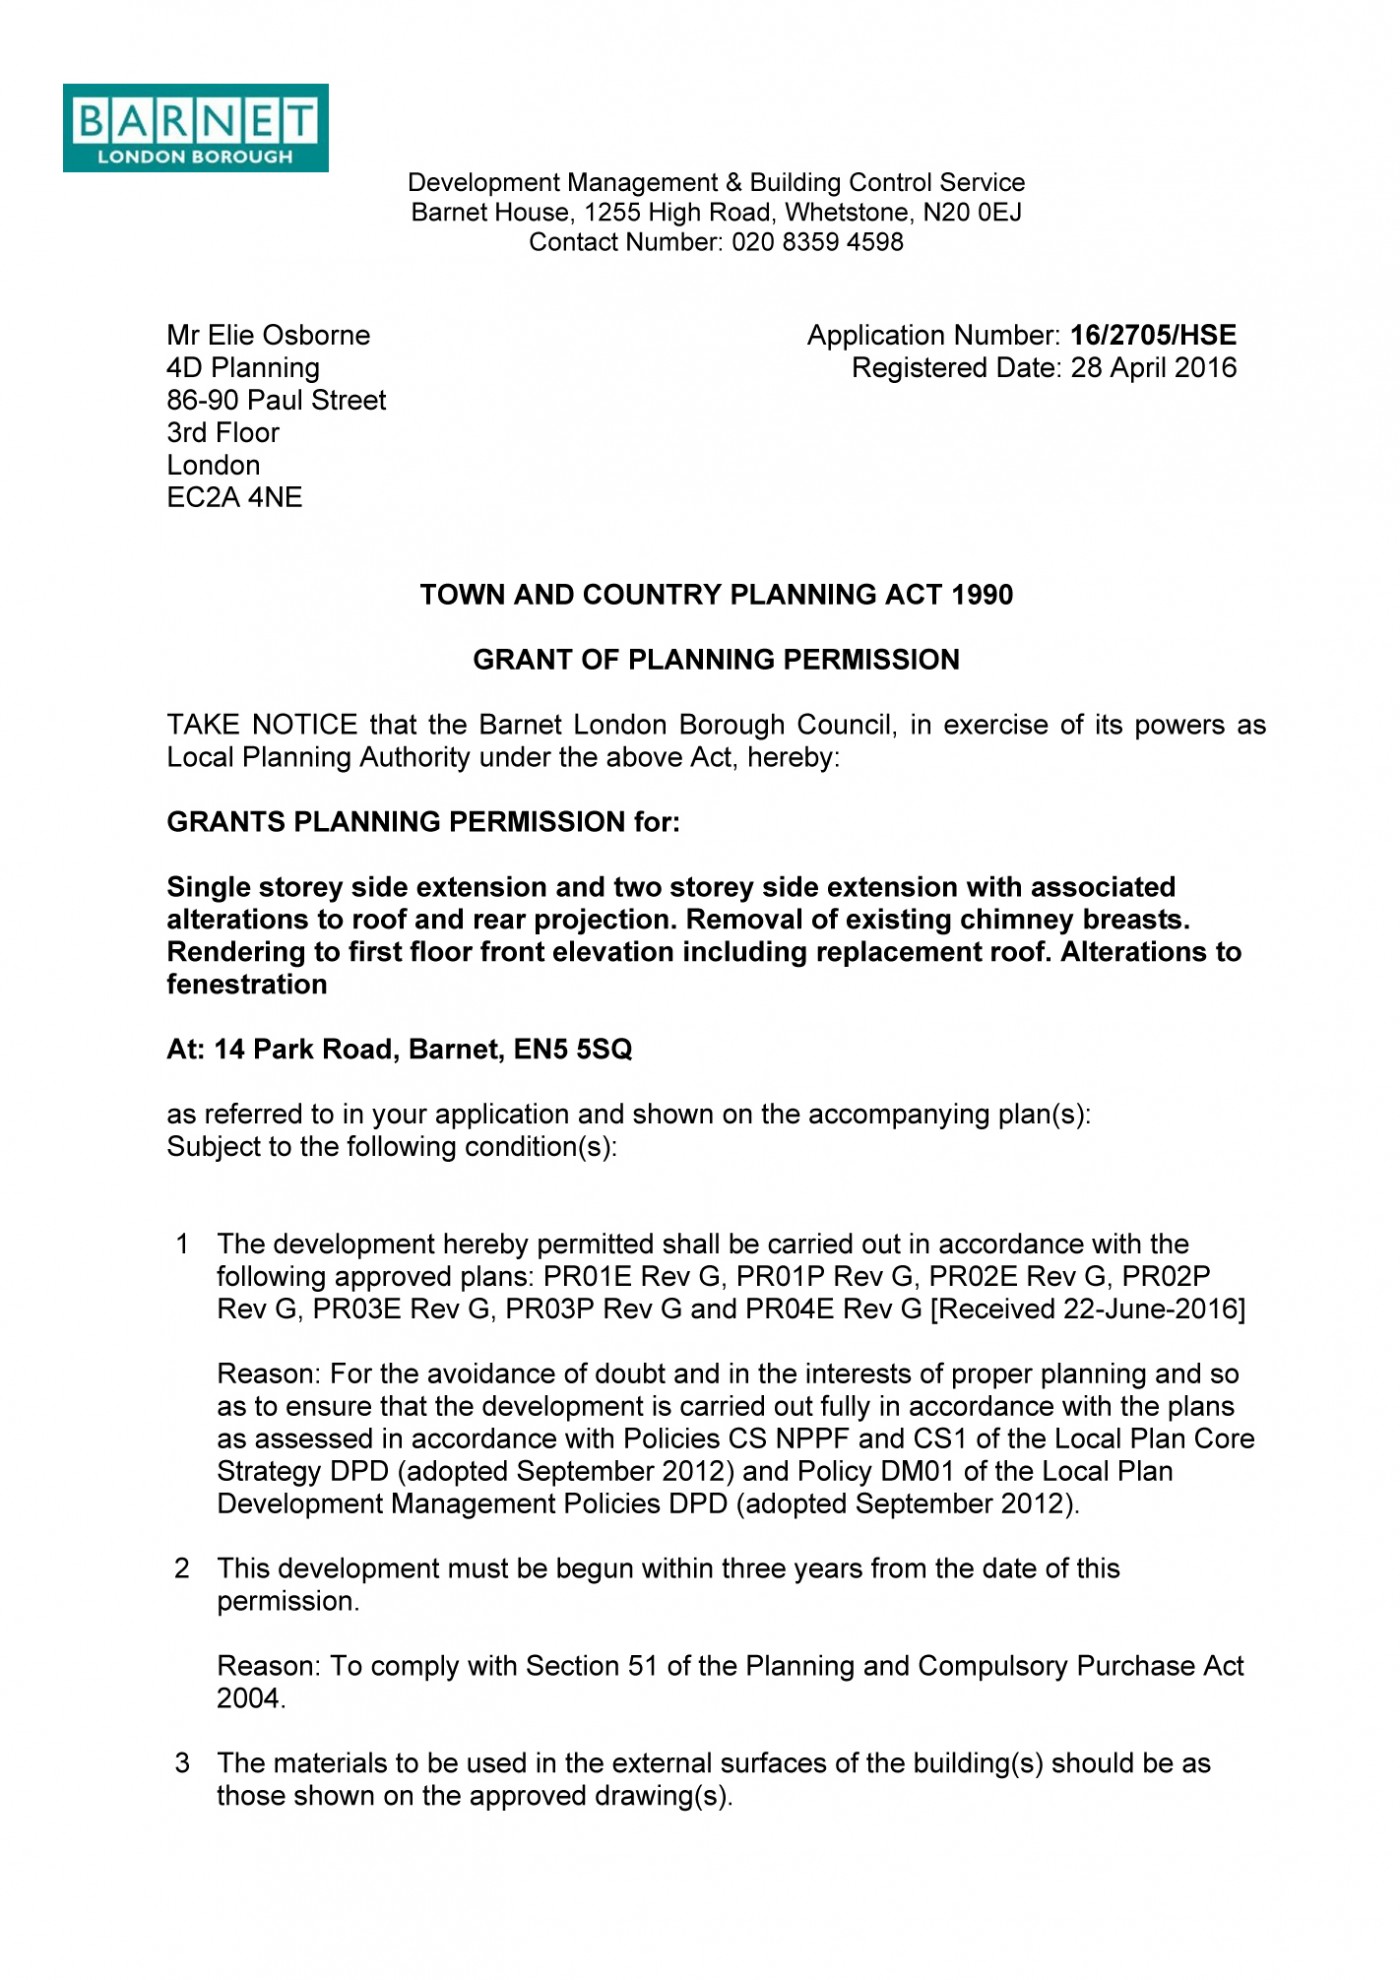 decision notice - Barnet Council